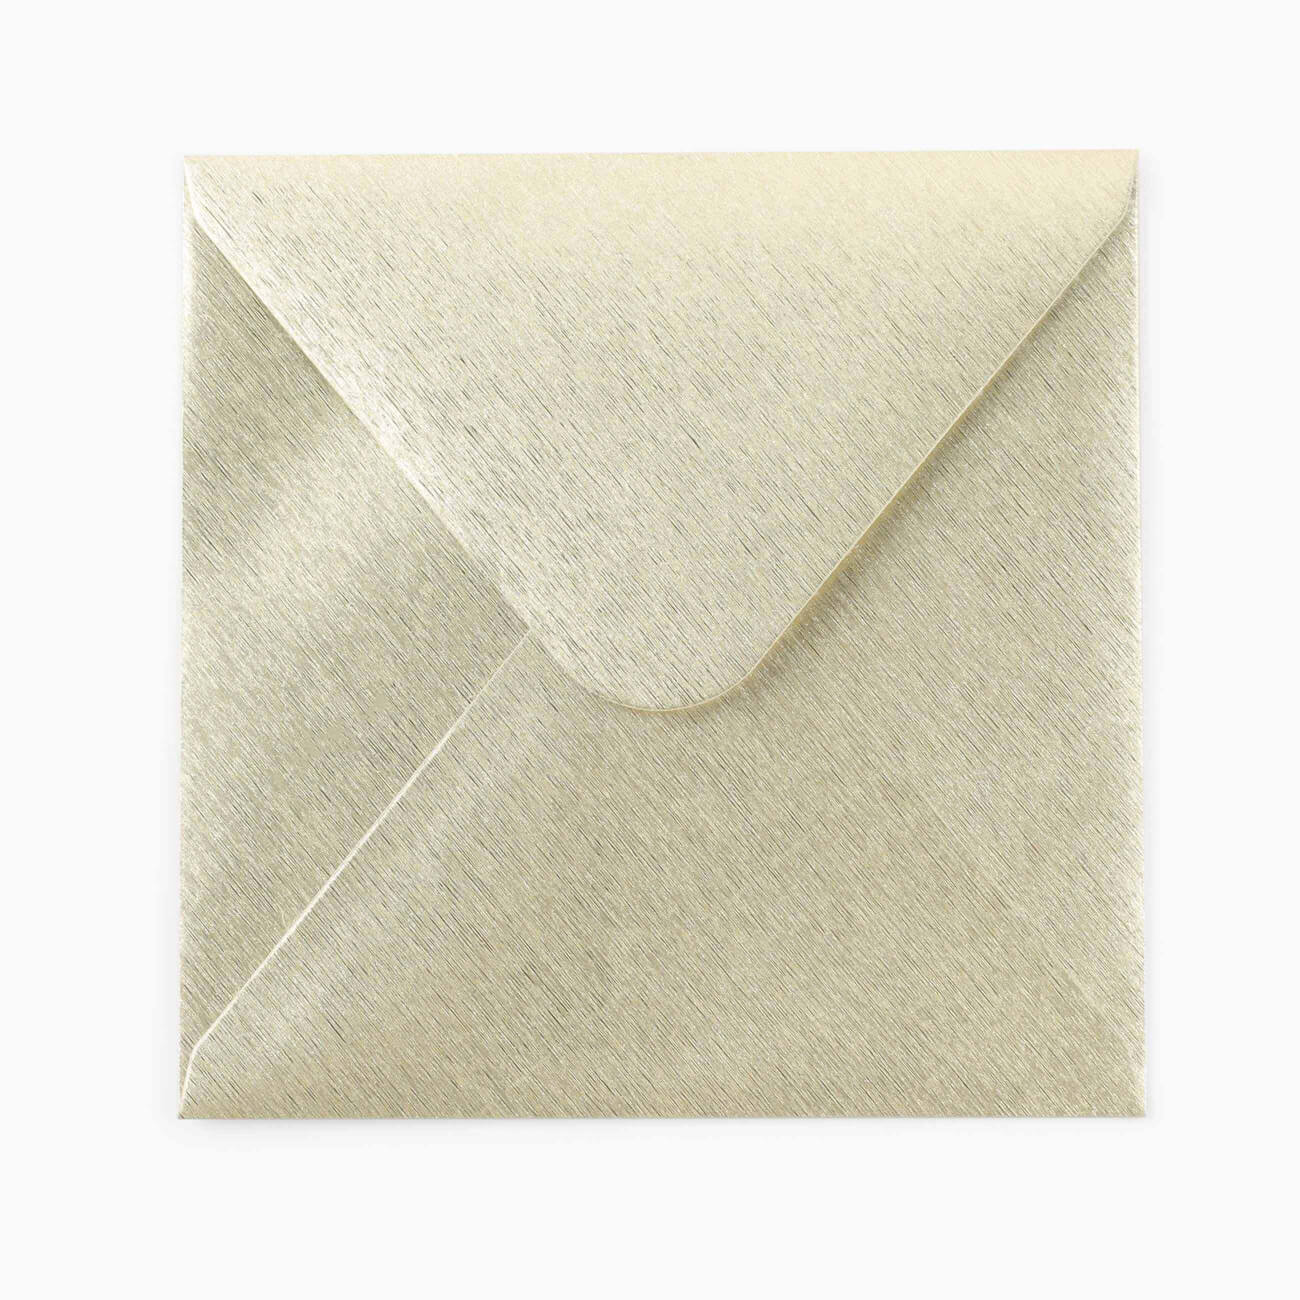 Конверт подарочный, 15 см, бумага, квадратный, золотистый, Congrats конверт деревянный